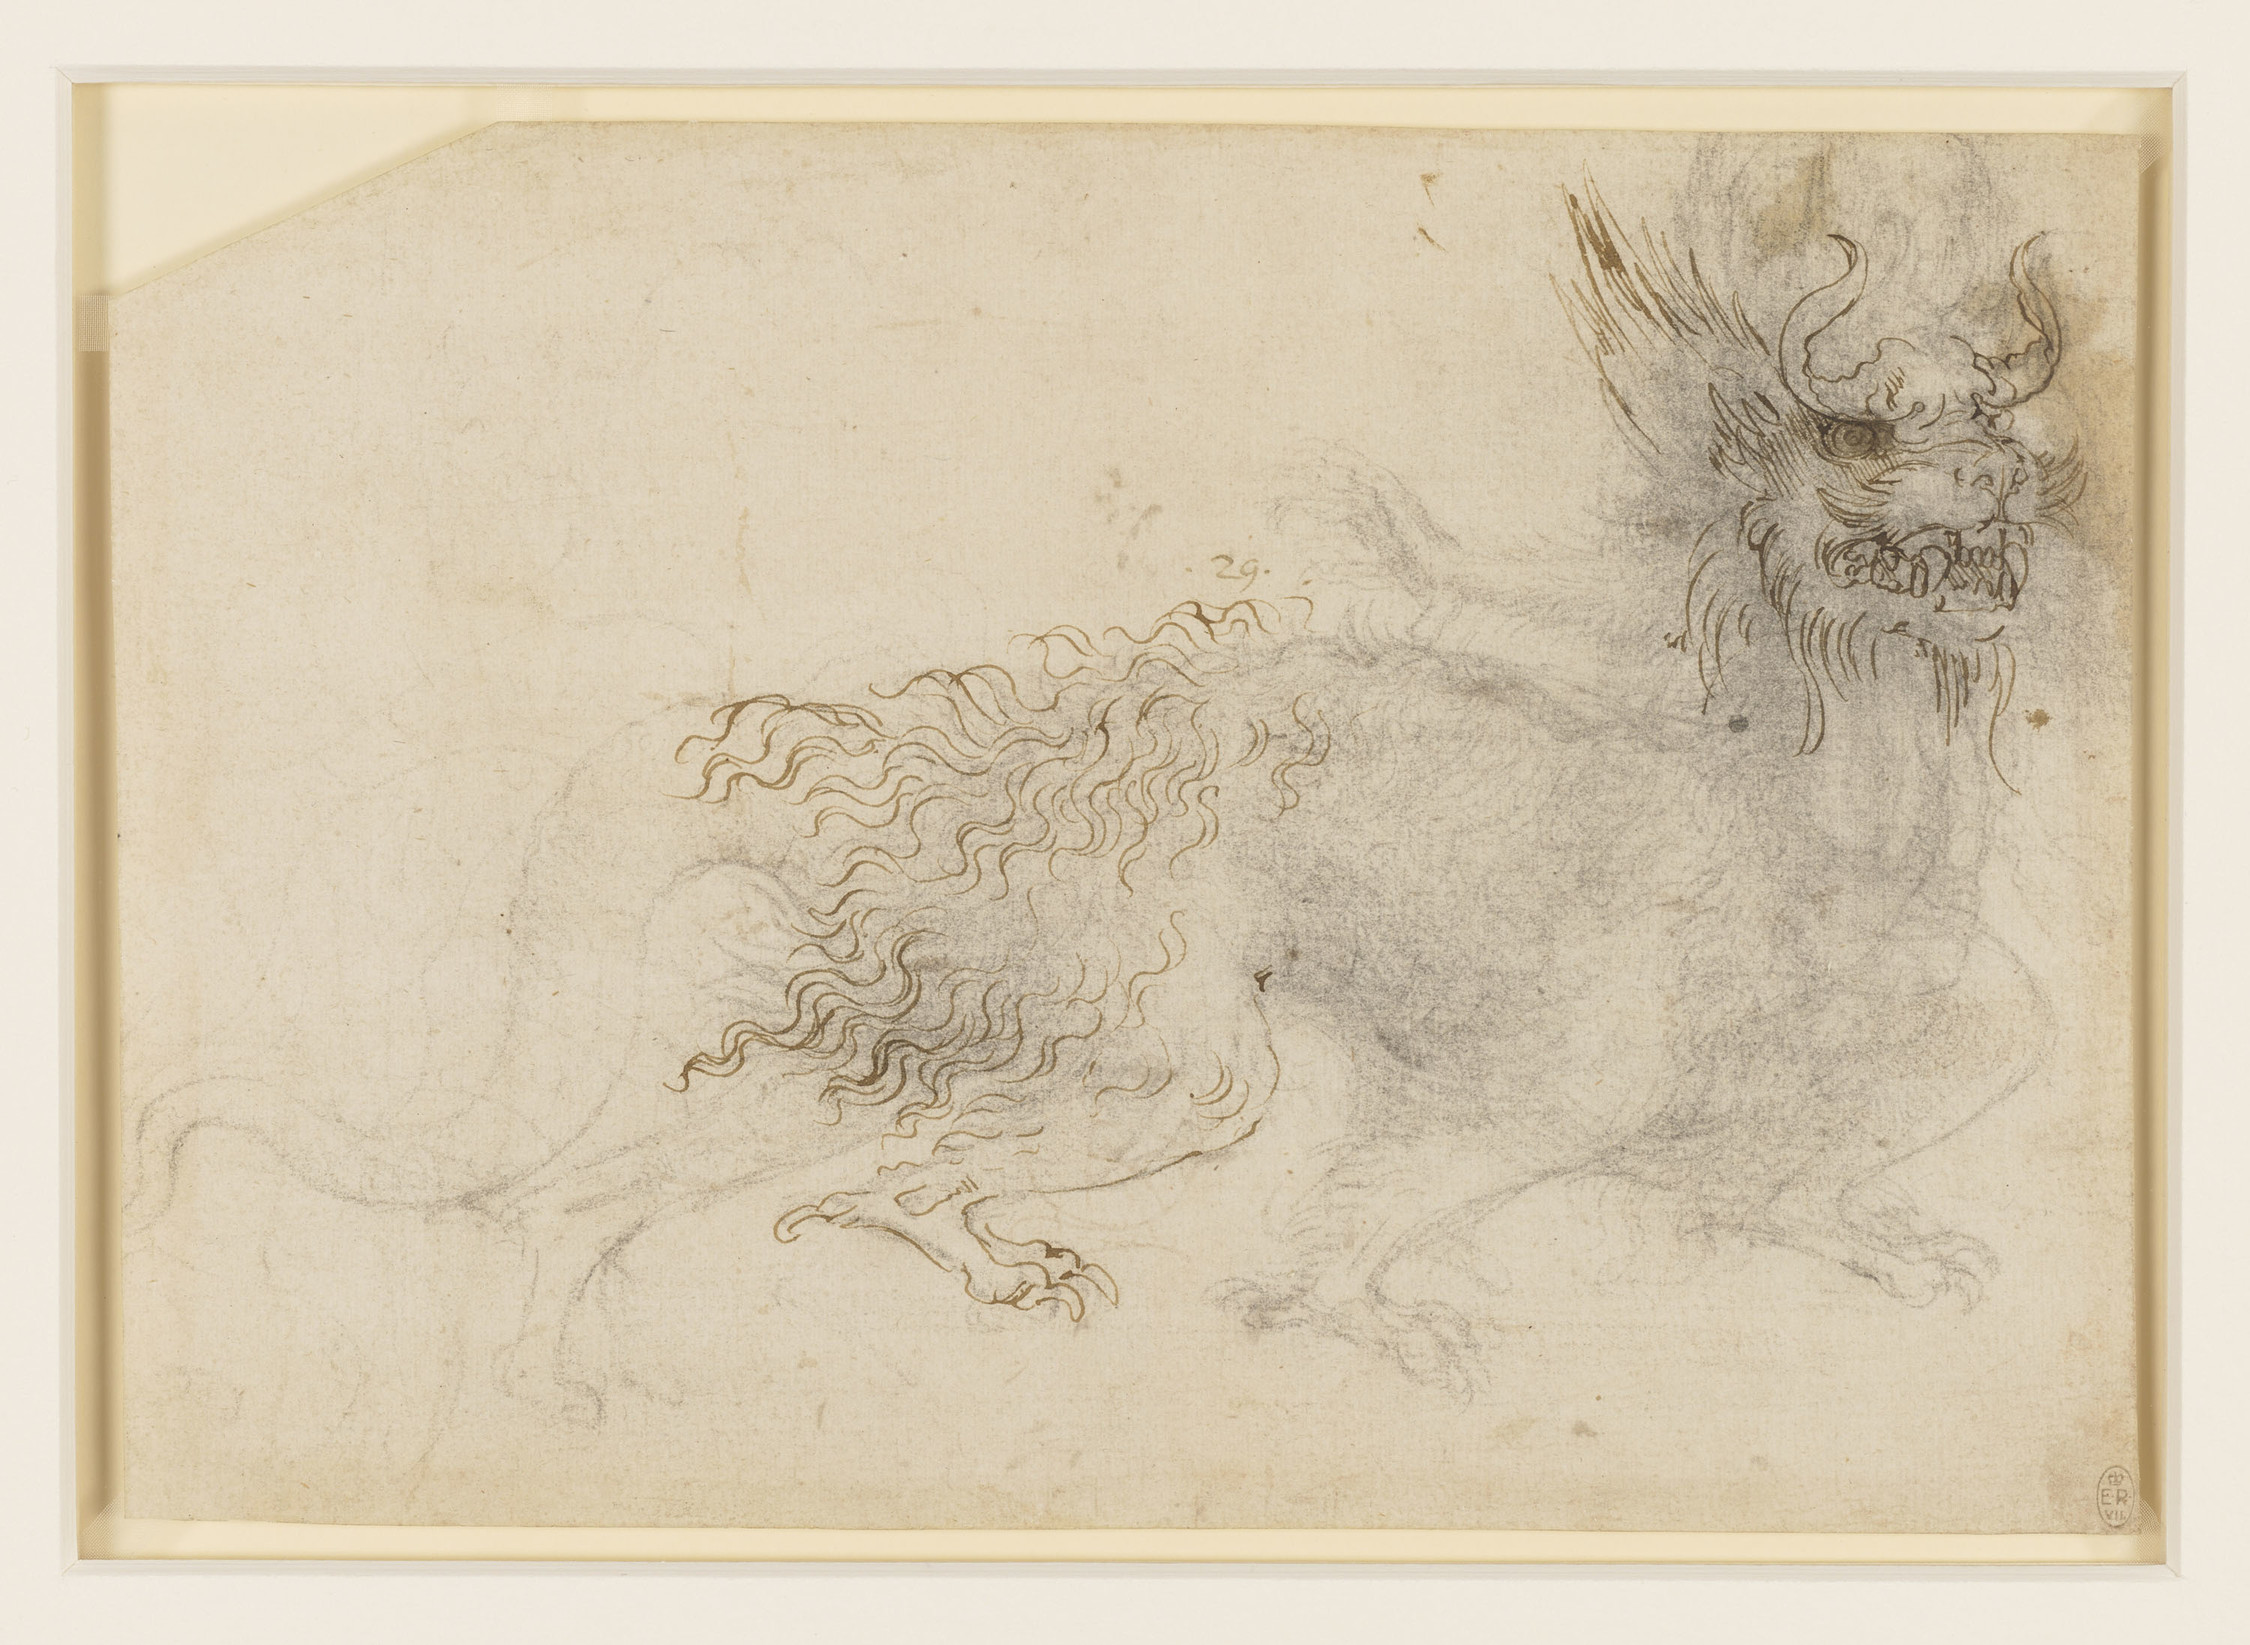 Um design para uma fantasia de dragão by Leonardo da Vinci - c.1517-18 - 18.8 x 27.0 cm 